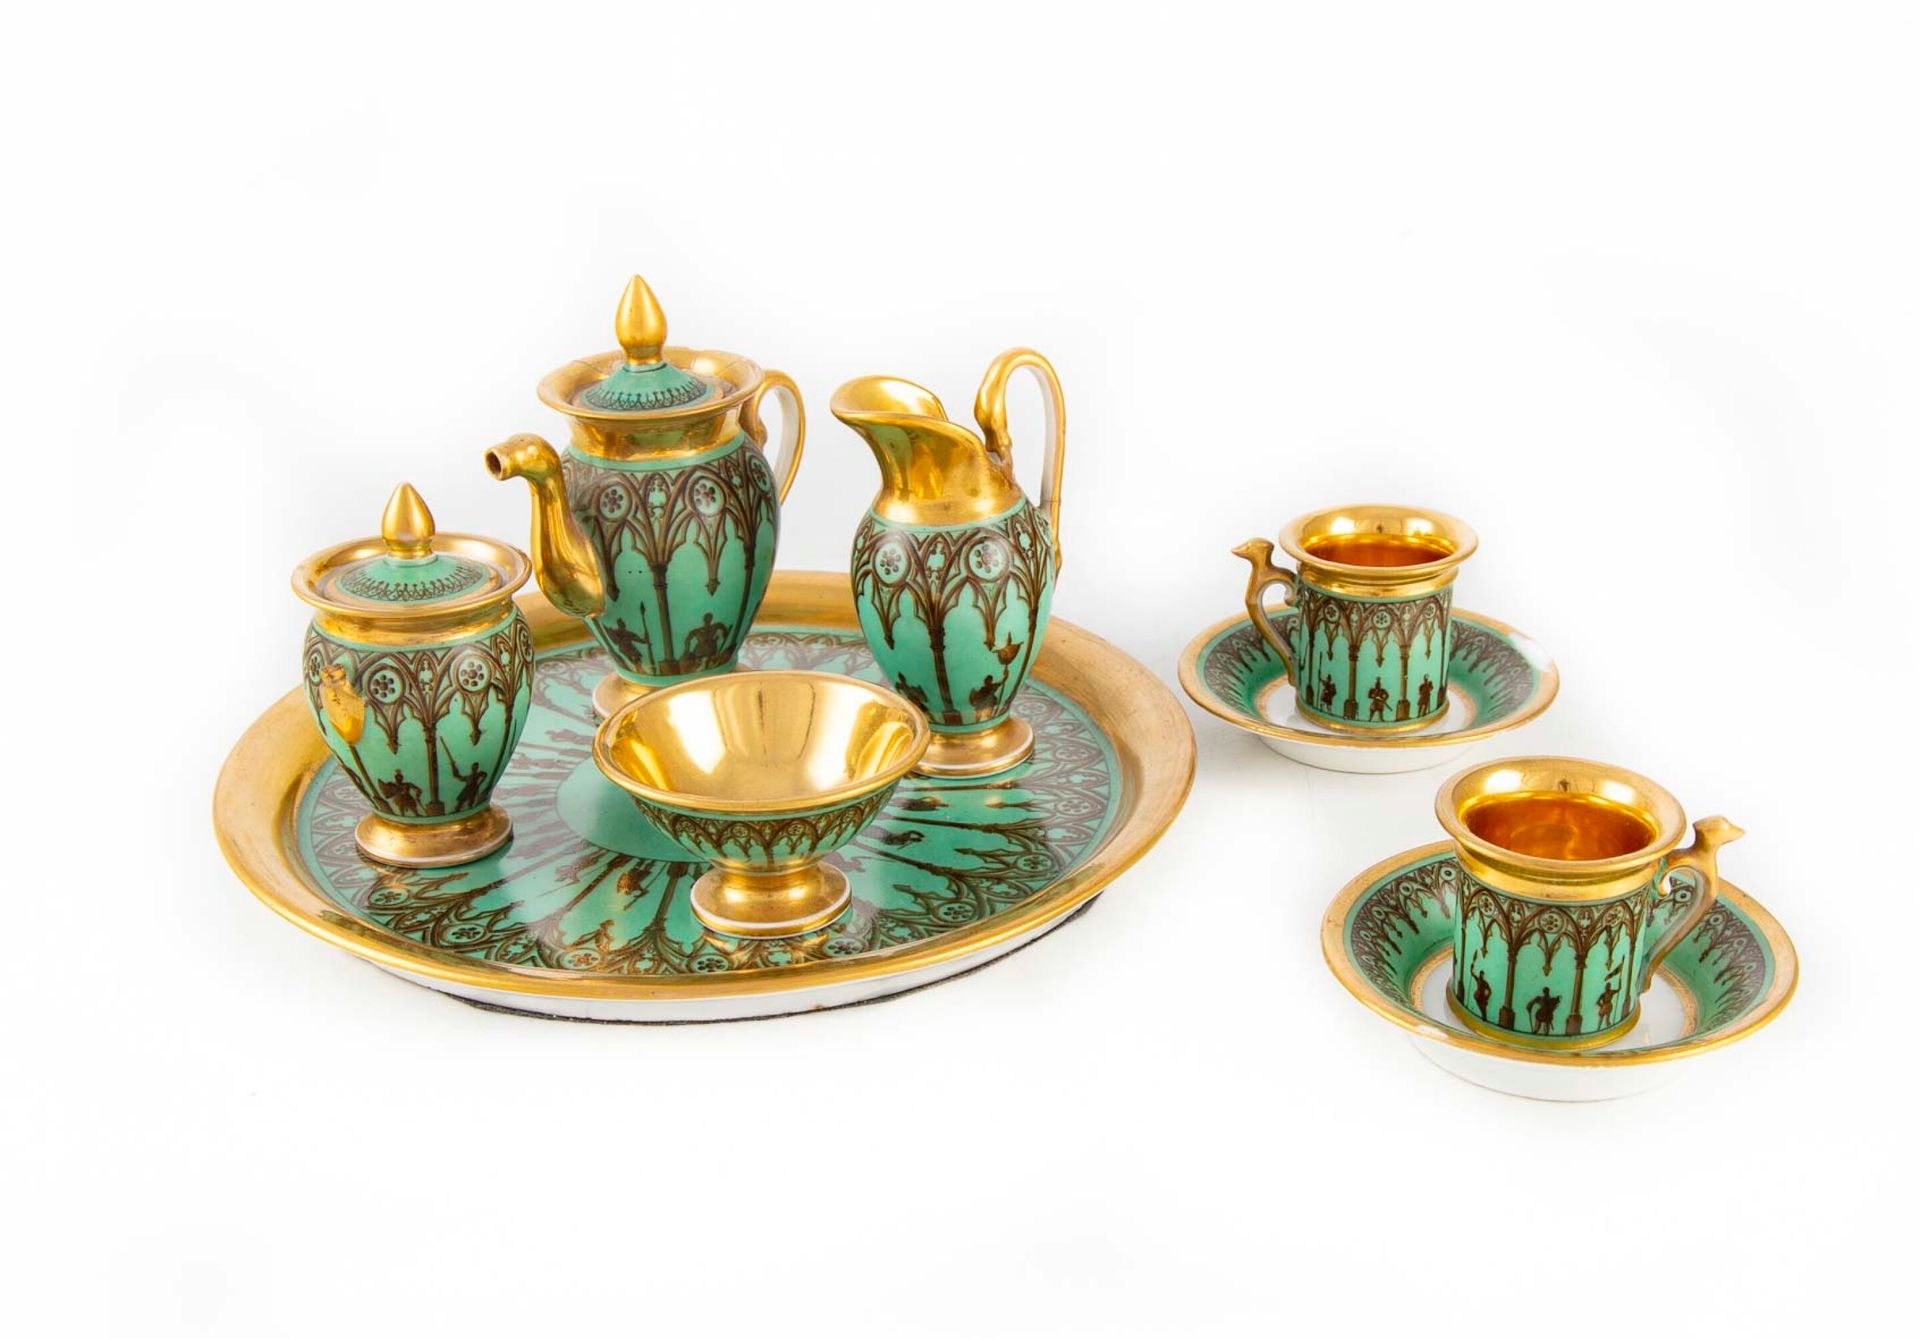 PARIS 巴黎

瓷器卡巴莱，绿色背景上的棕色和金色装饰，新哥特式风格的拱门下的人物，包括一个圆形托盘，一个有盖茶壶，一个有盖糖罐，一个牛奶罐，一个碗，两个圆&hellip;